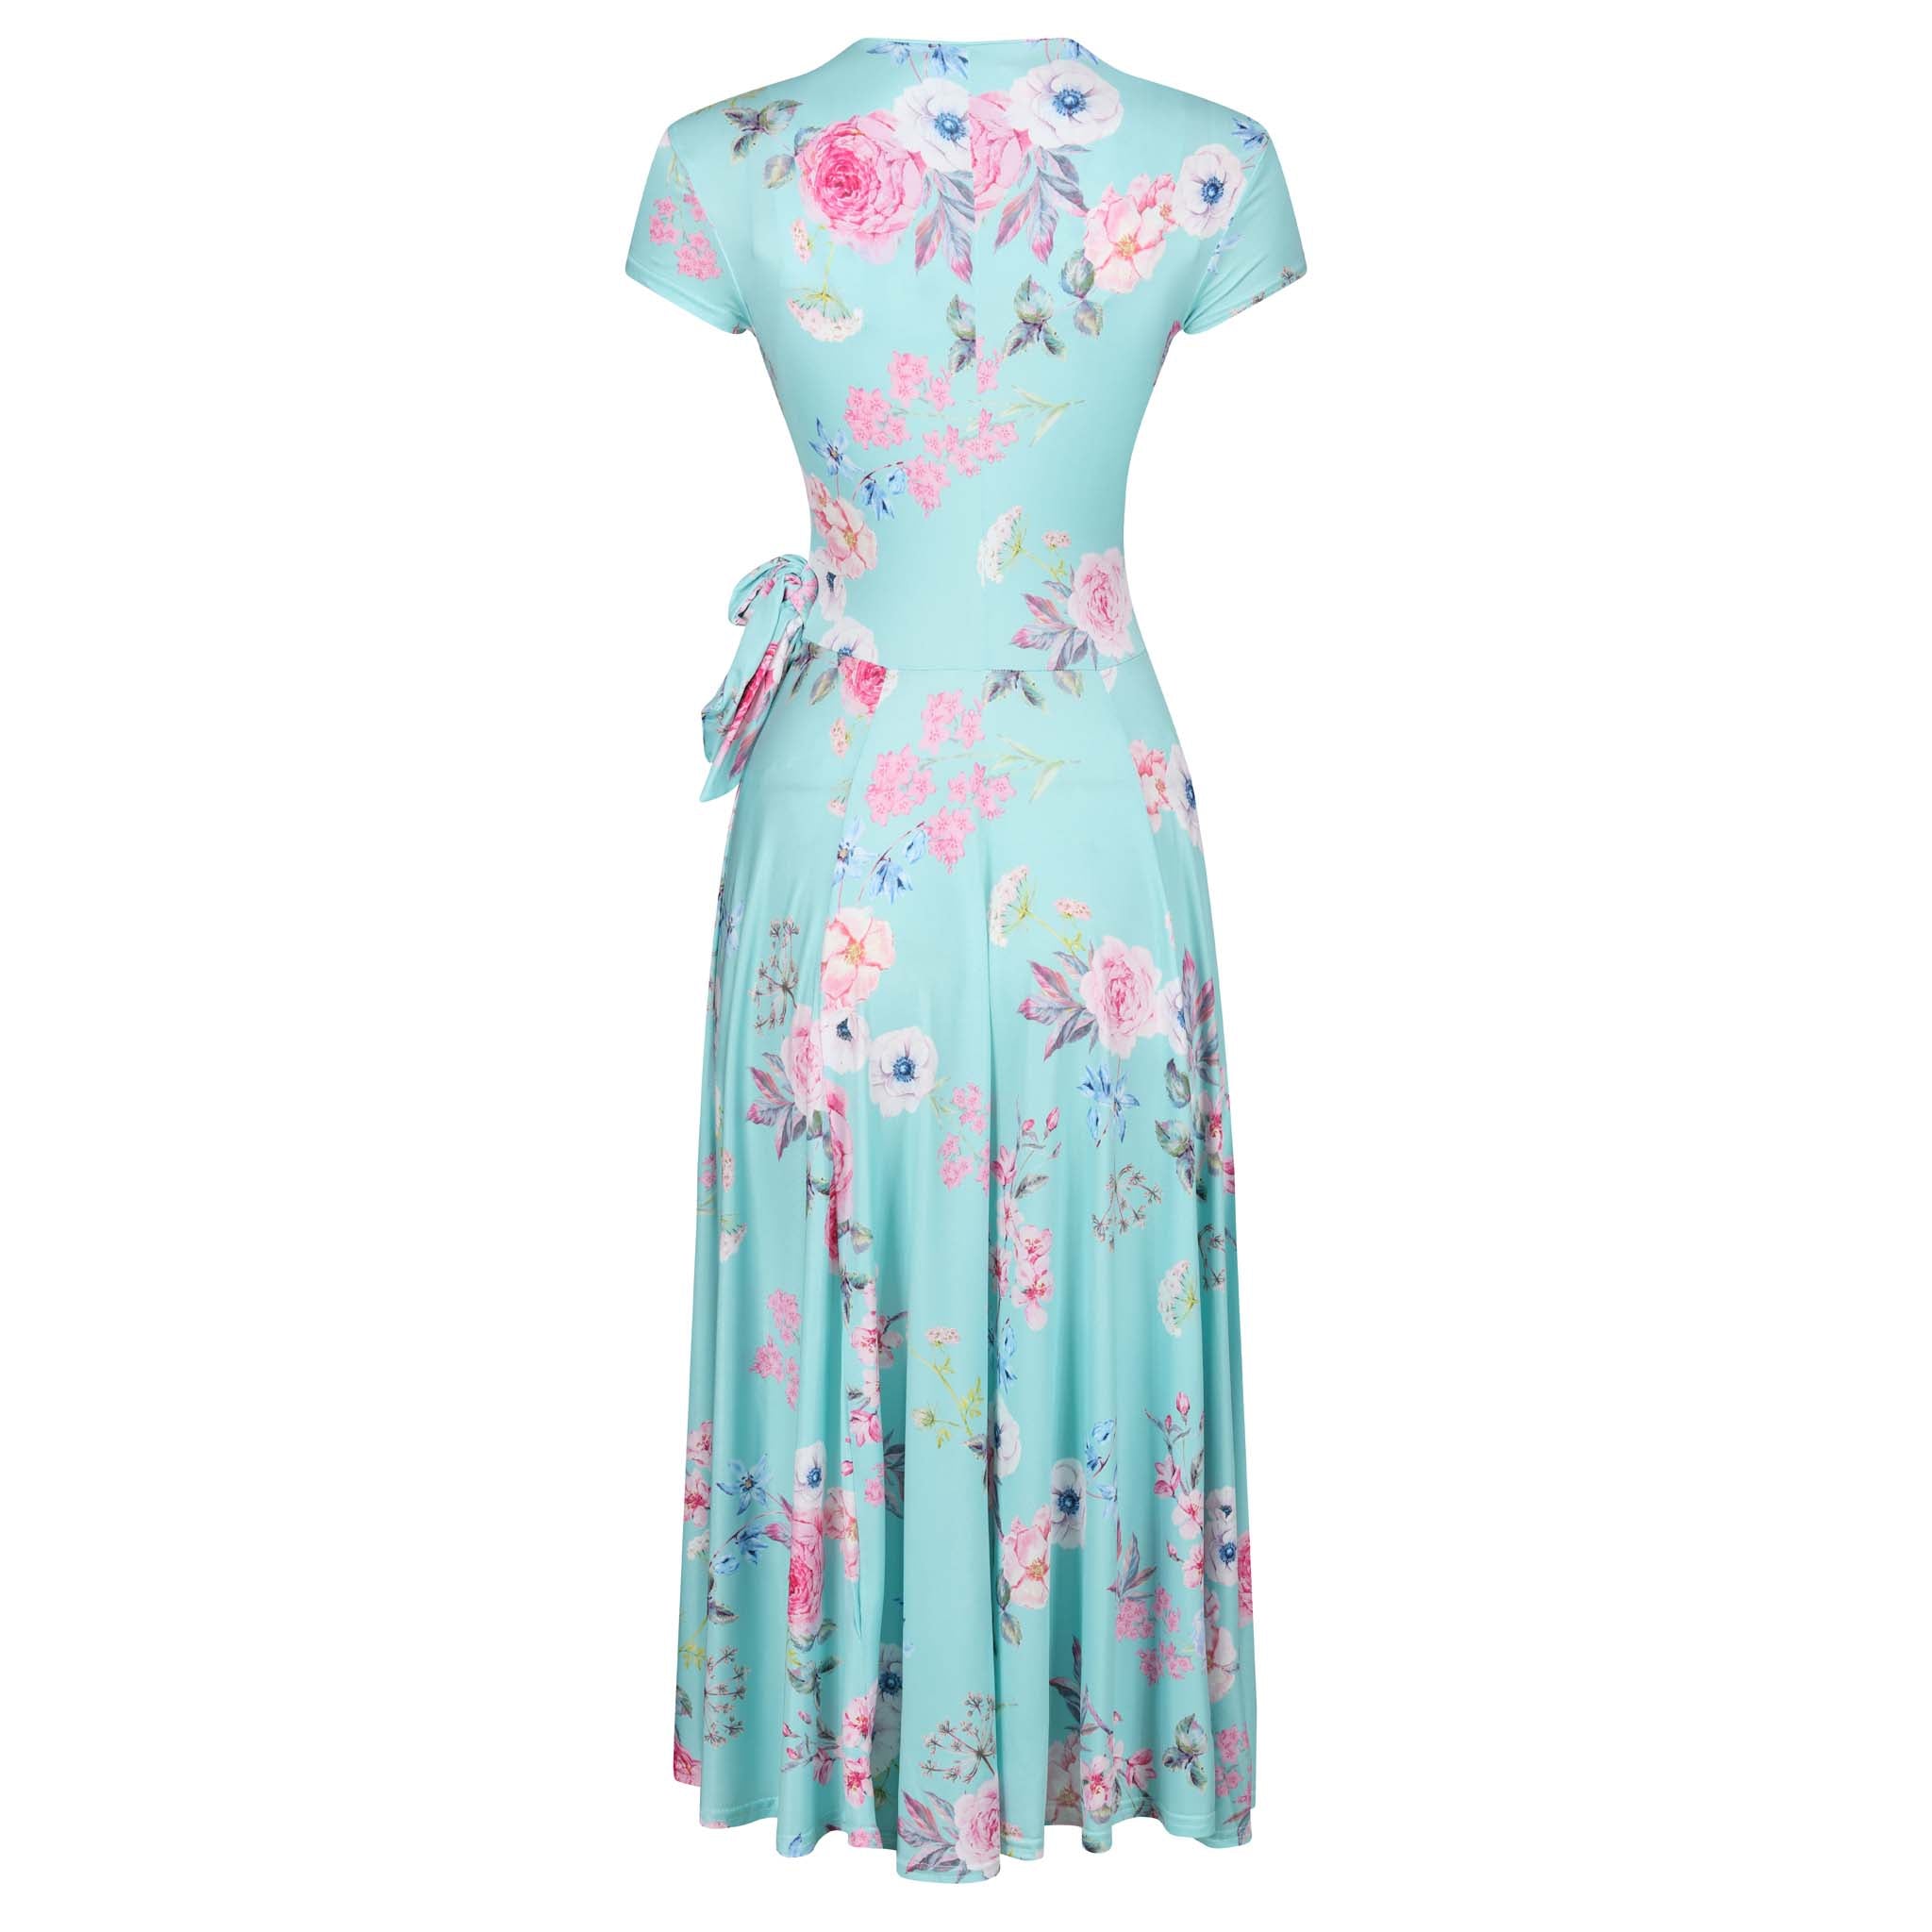 Aqua Mint Floral Print Cap Sleeve Crossover Top Swing Dress